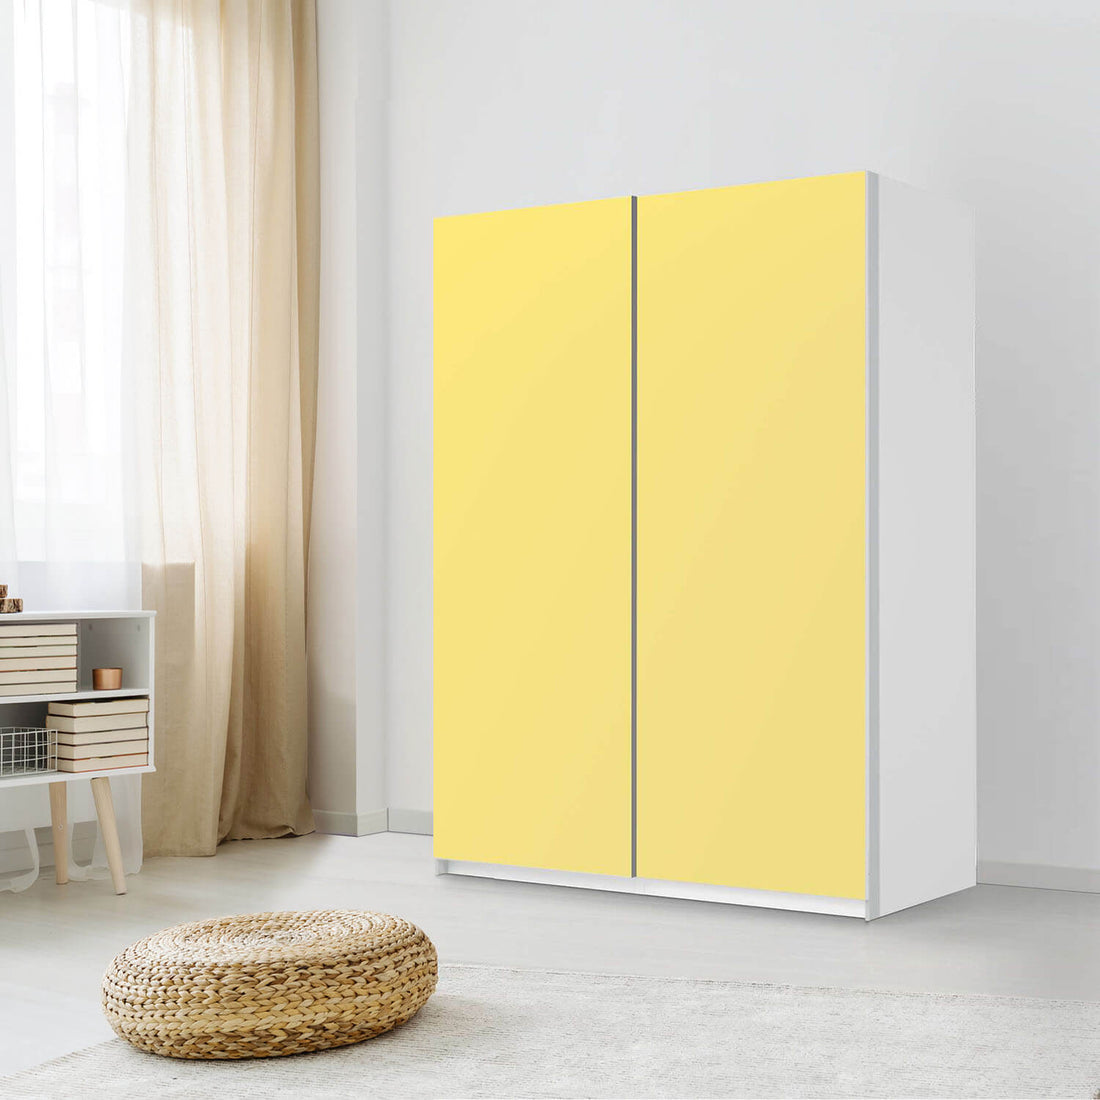 Möbel Klebefolie Gelb Light - IKEA Pax Schrank 201 cm Höhe - Schiebetür 75 cm - Schlafzimmer